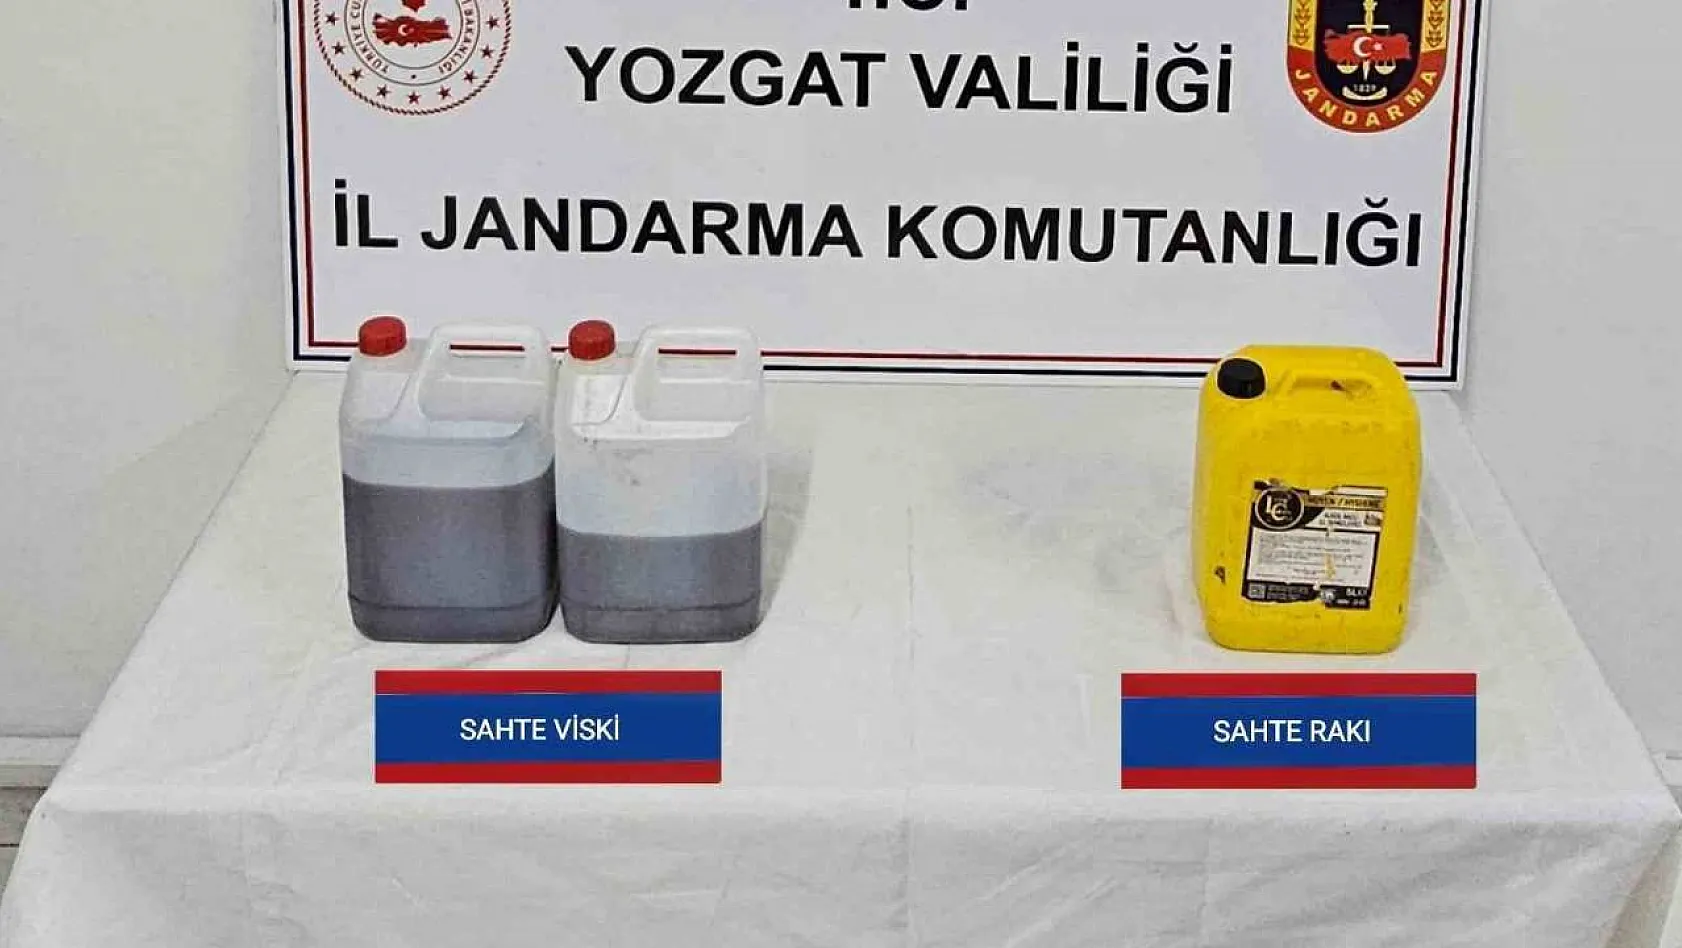 Yozgat'ta sahte içki operasyonu: 1 gözaltı